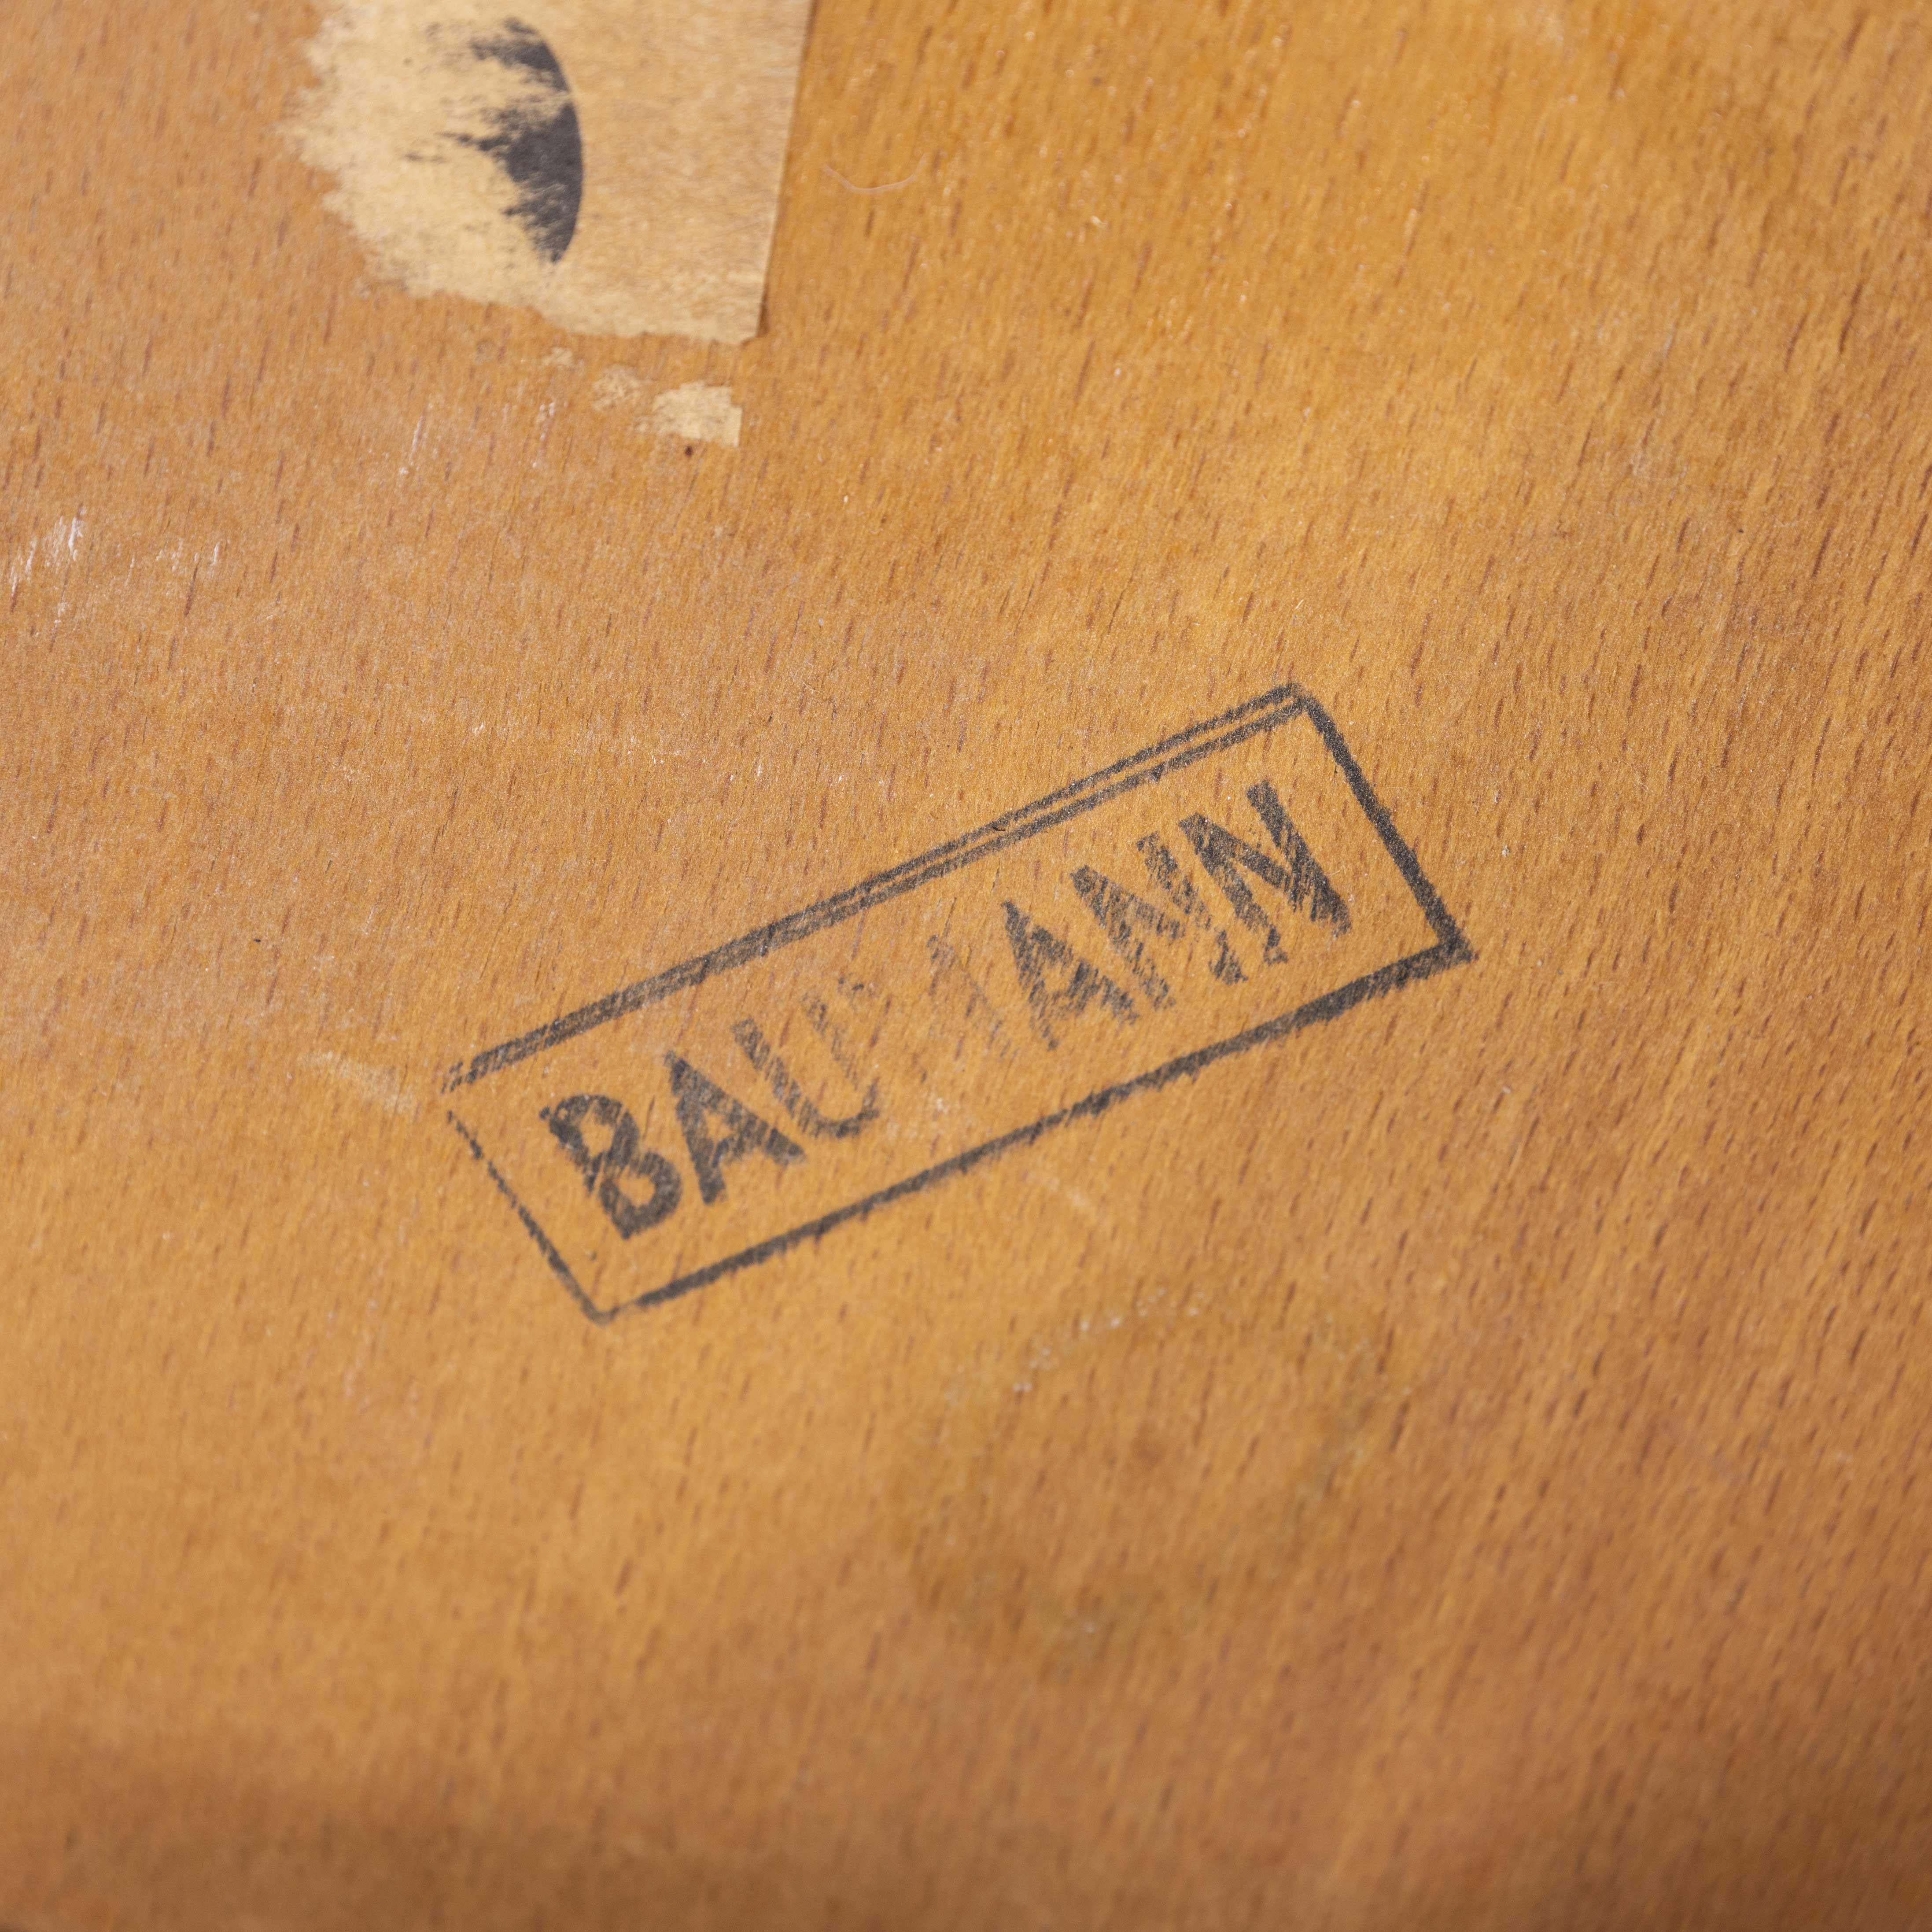 Chaises de salle à manger en bois de hêtre blond baumann des années 1950 - ensemble de vingt-quatre pièces

Chaises de salle à manger Baumann en bois de hêtre blond des années 1950 - ensemble de vingt-quatre (modèle 1403). Baumann est un